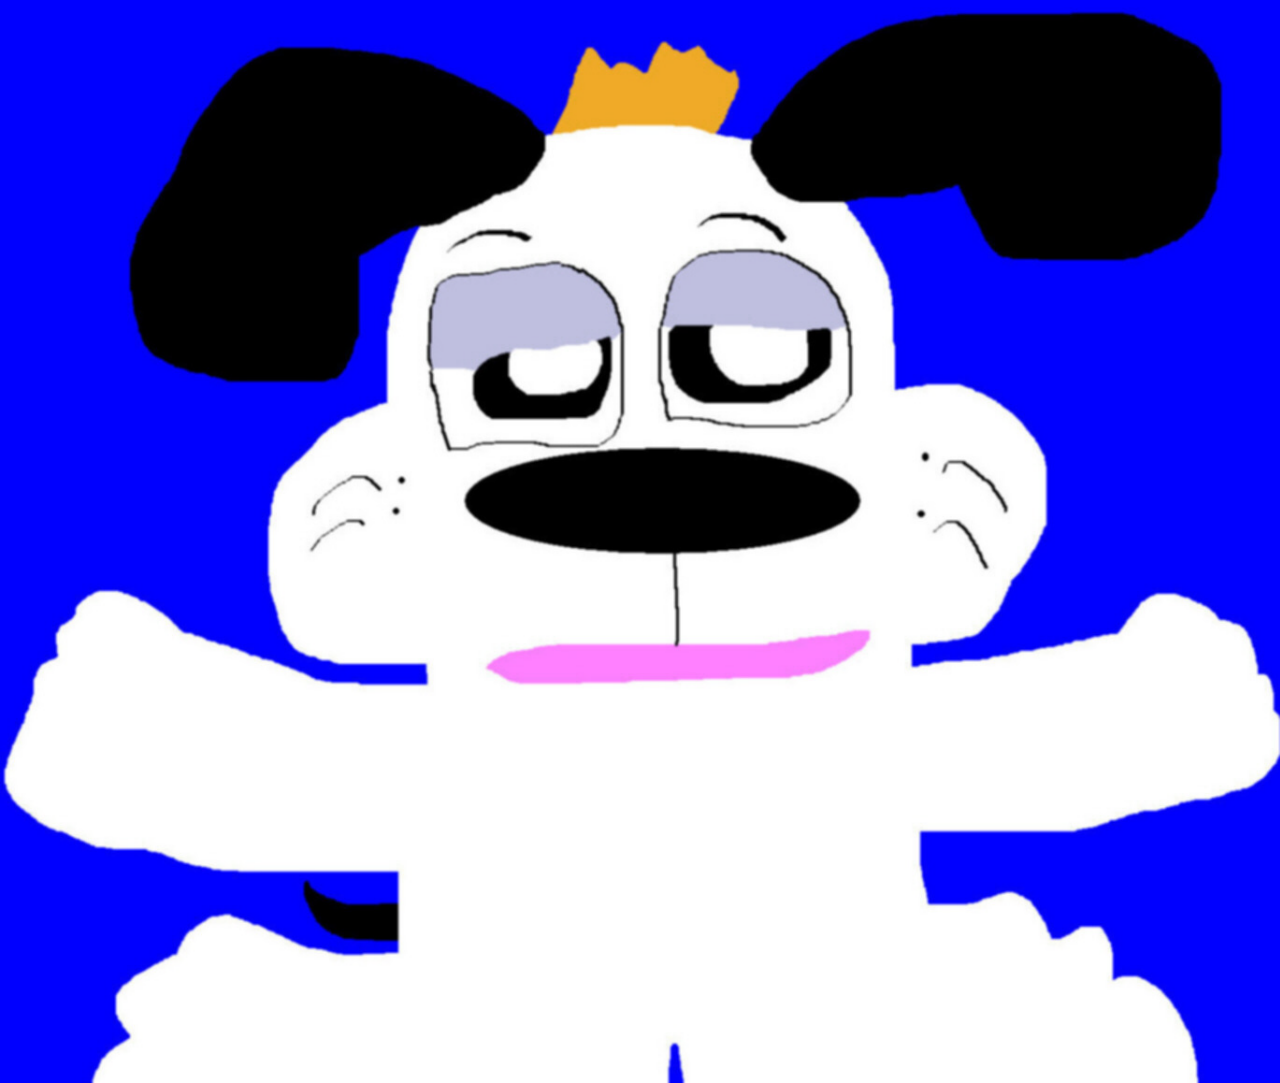 Random Droopy Dog MS Paint by Falconlobo